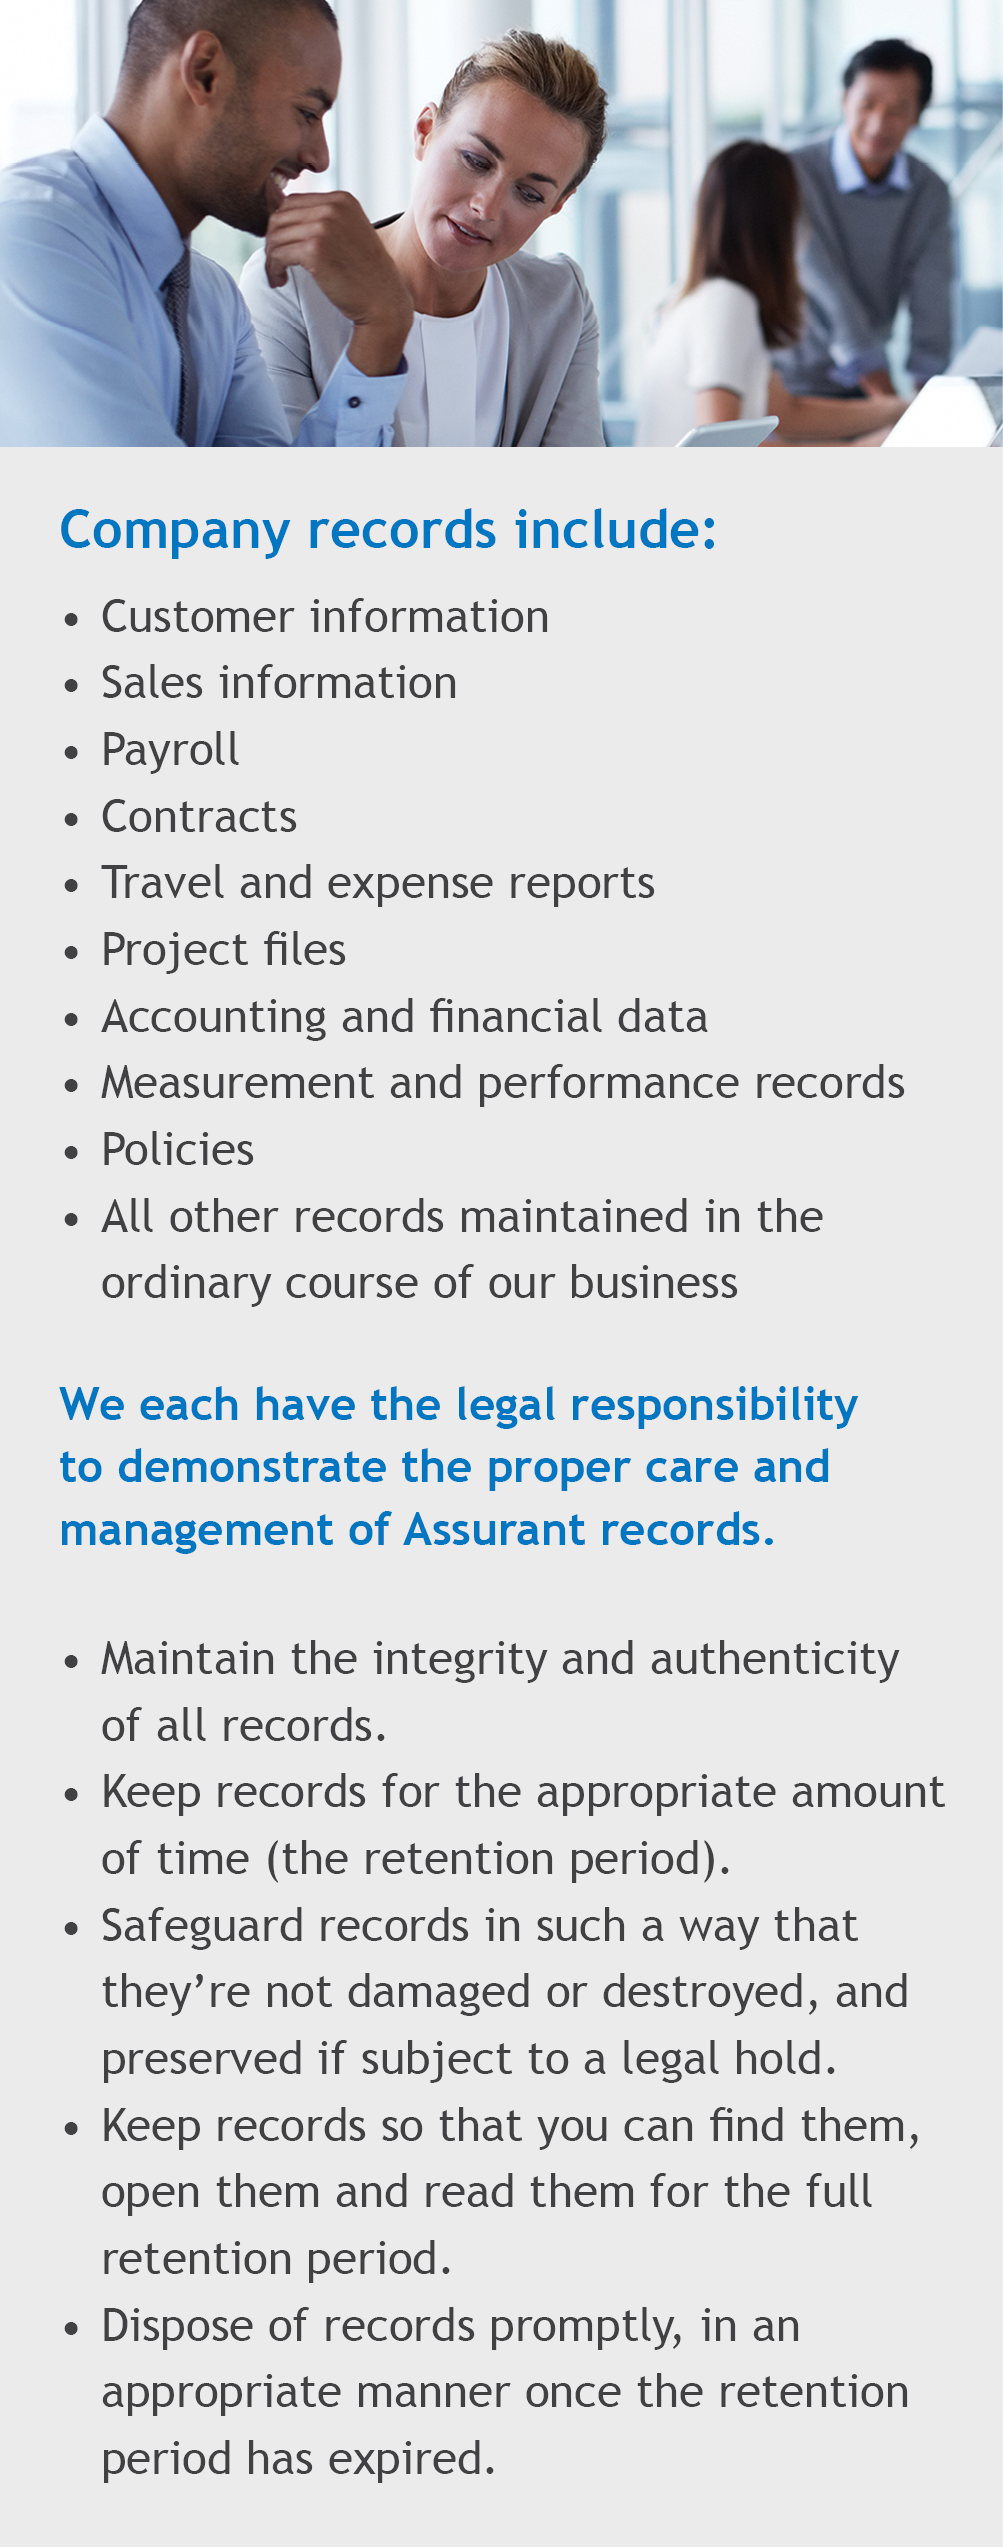 company records include